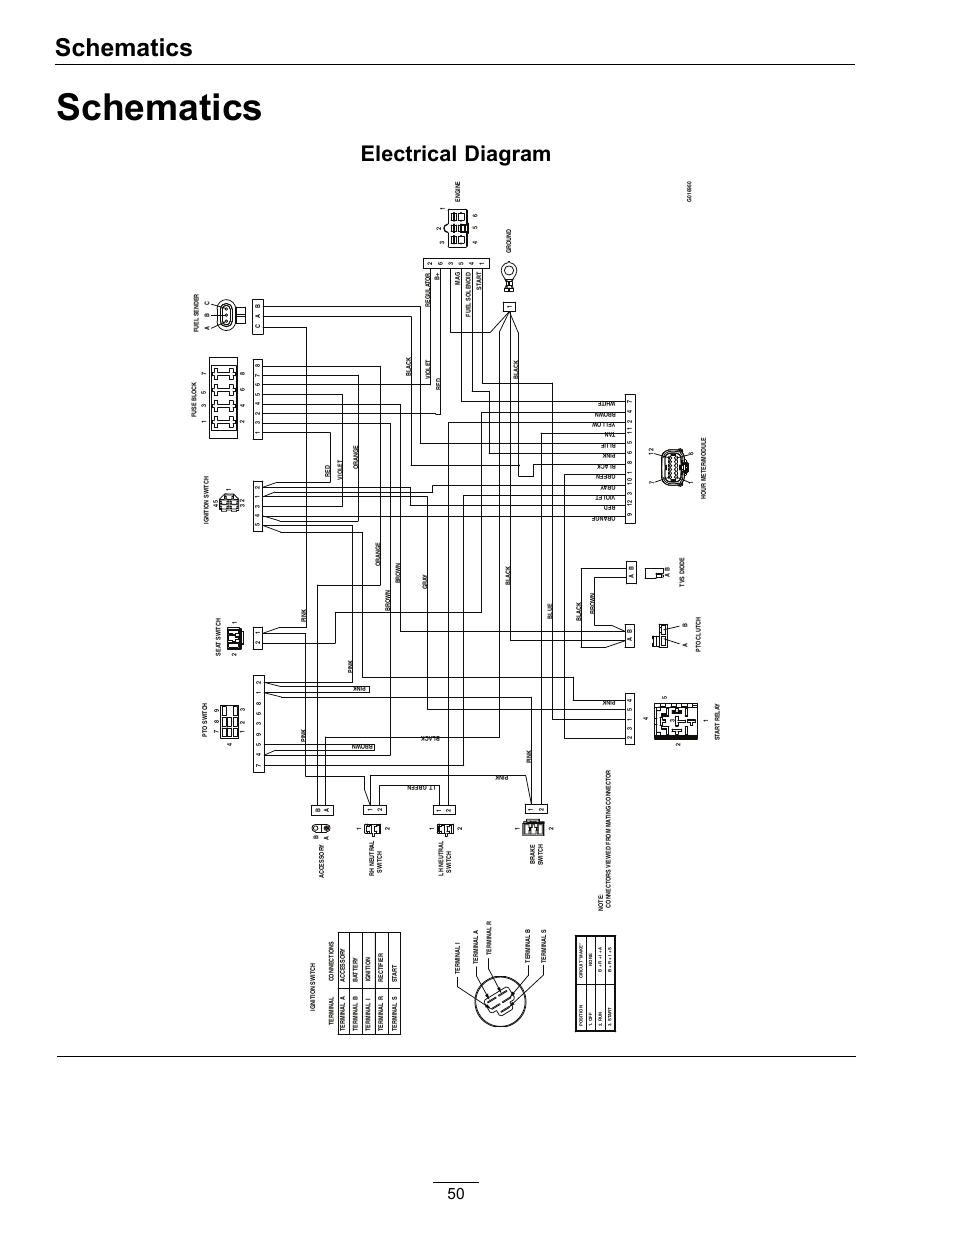 panasonic cn-nvd905u unit 16 pinout wiring diagram